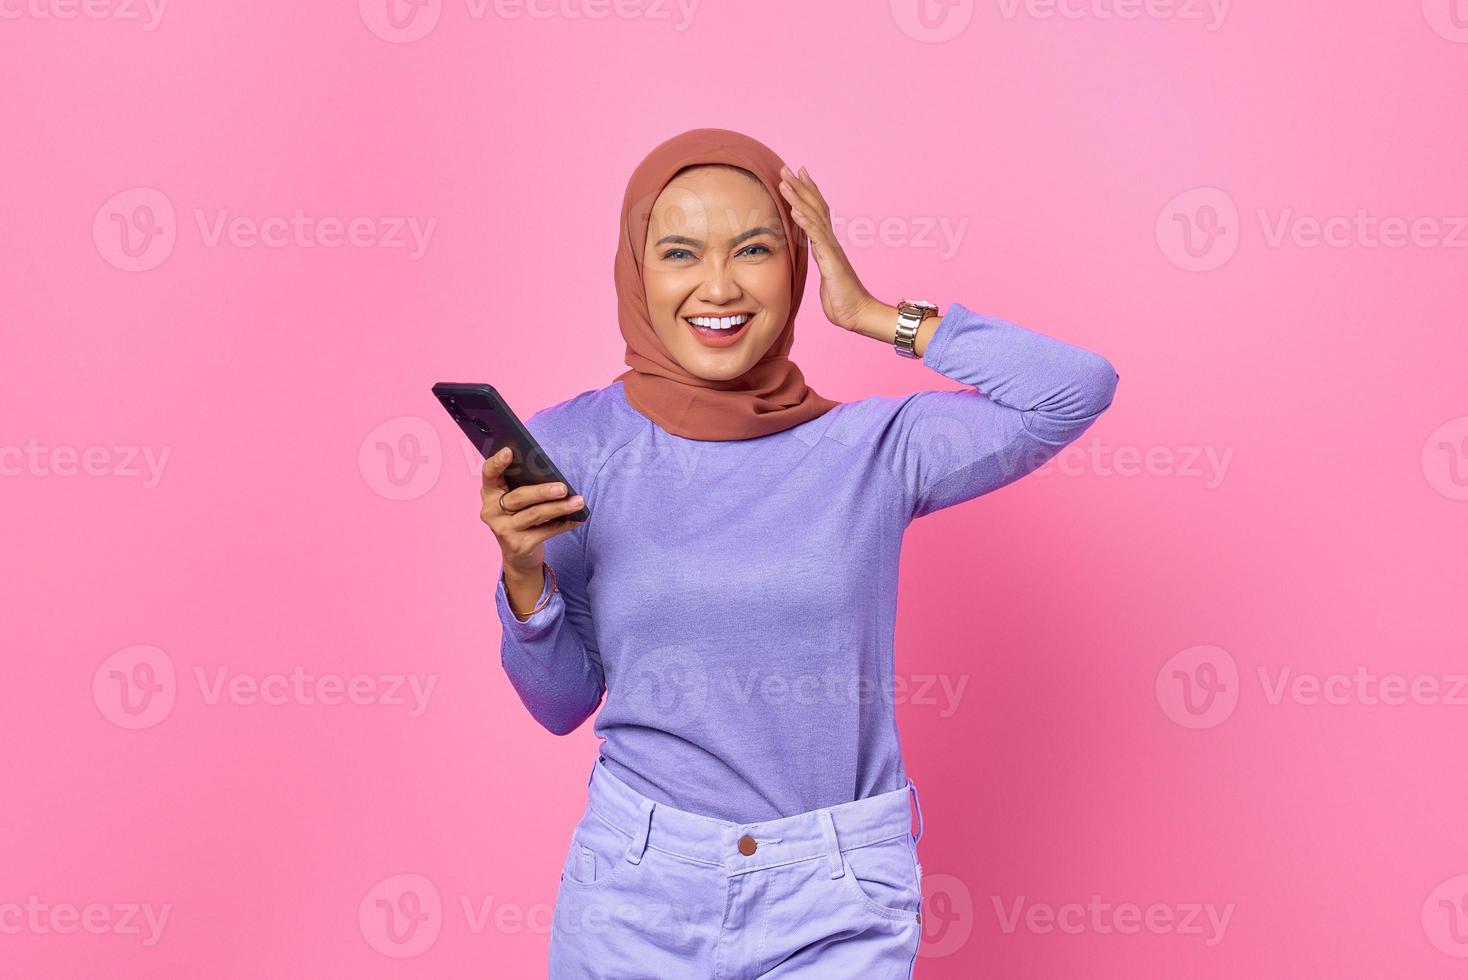 retrato, de, sonriente, joven, mujer asiática, tenencia, teléfono móvil, en, fondo rosa foto